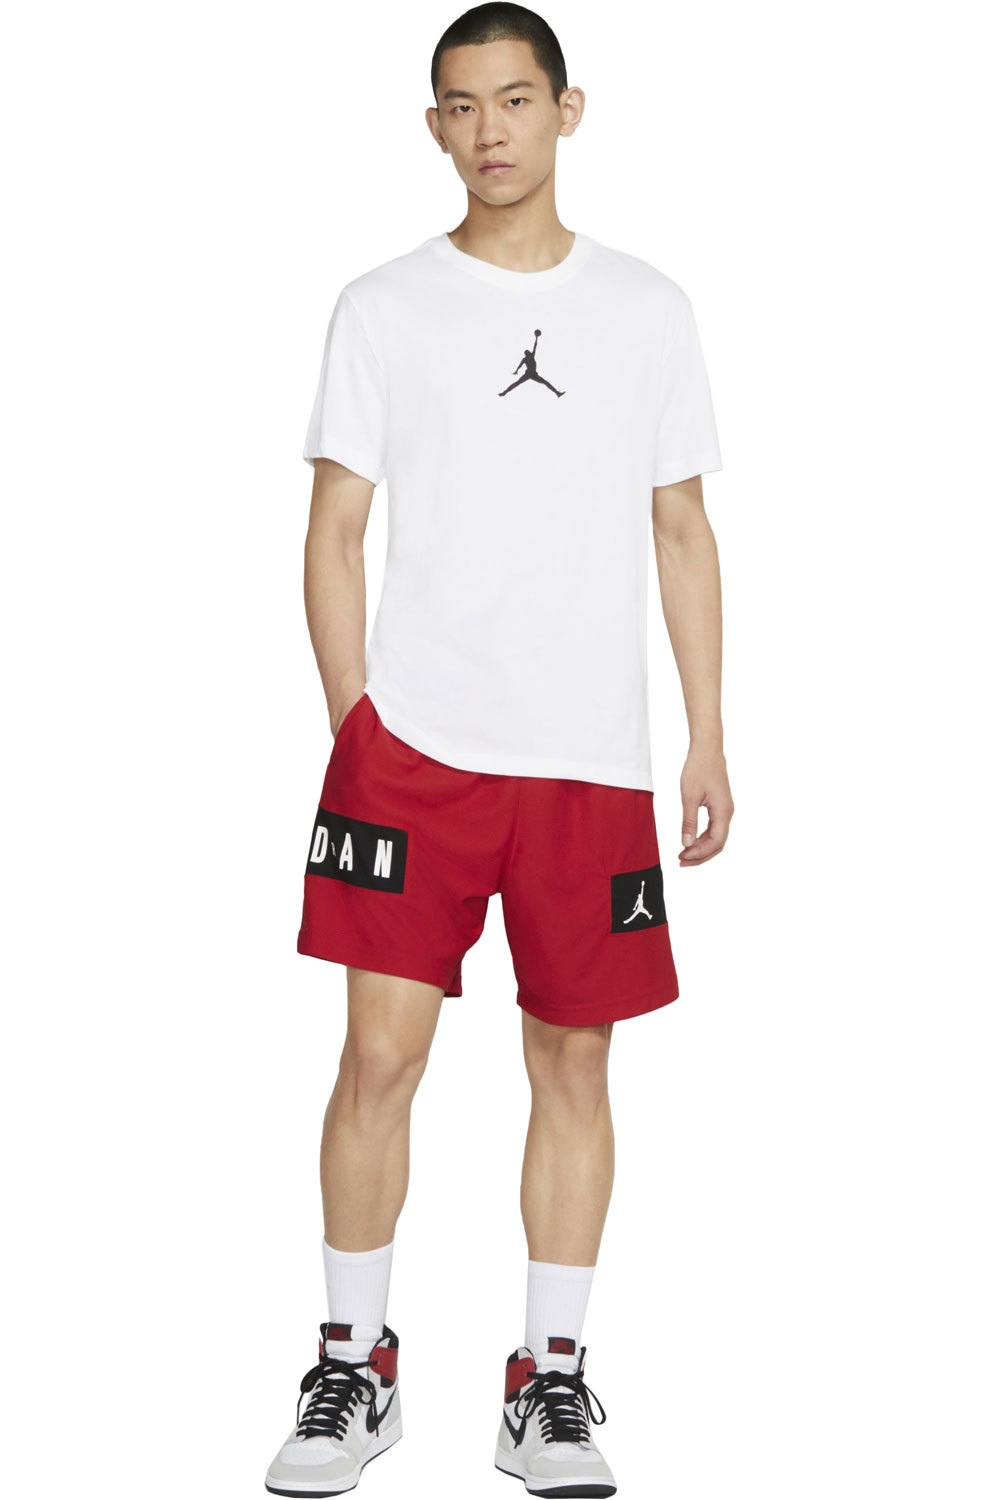 Nike camiseta manga corta hombre JORDAN JUMPMAN 4 03